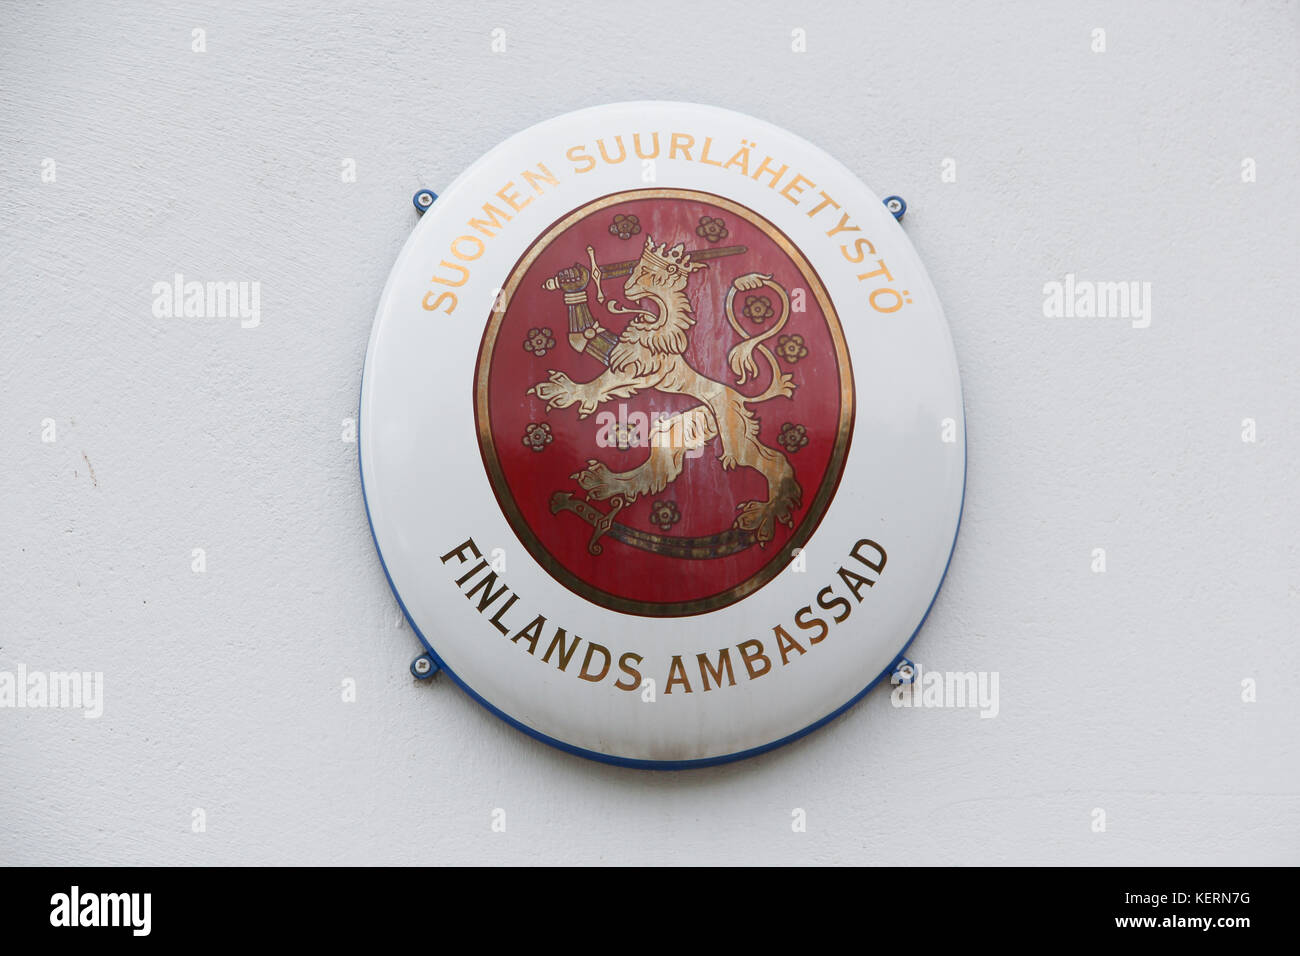 Der heraldische Zeichen close-up: ein weißes Metall oval mit einem roten Center c Emblem. goldenen Löwen mit einem Schwert in der Krone. finnische Botschaft in Schweden Stockfoto